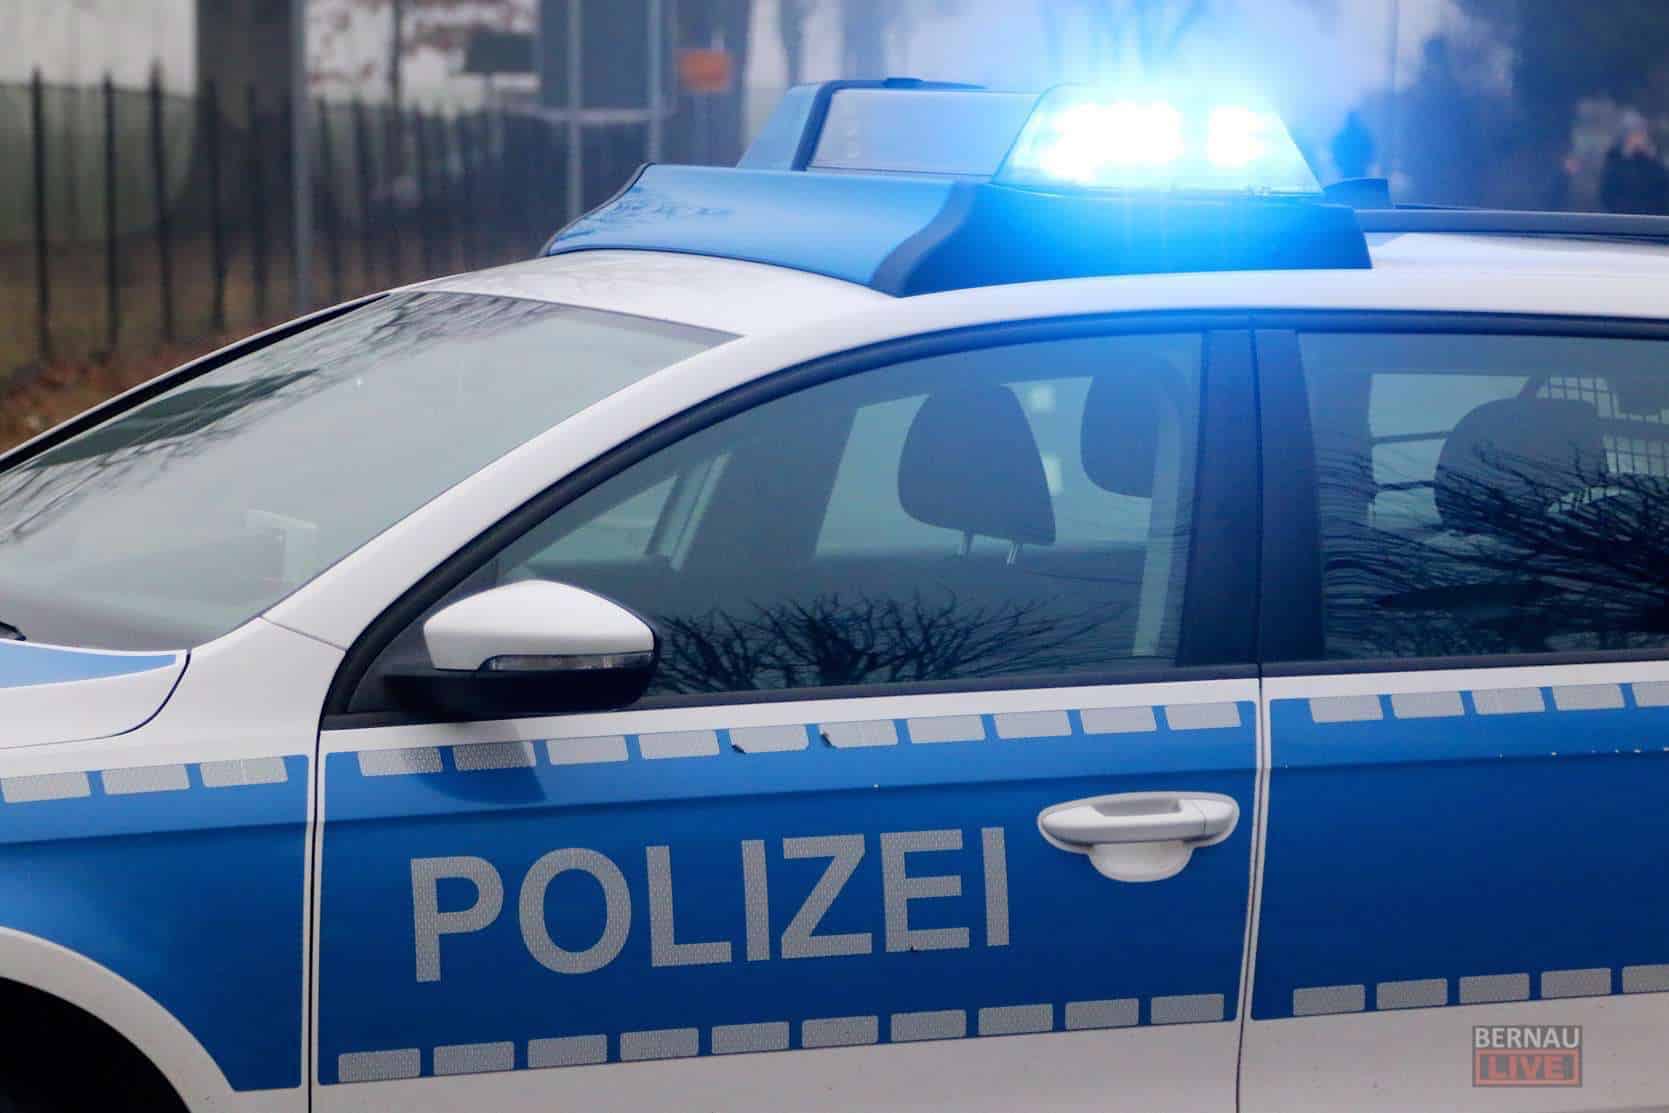 Polizei Bernau: Mit gestohlenem 7er BMW Parkhaus-Poller gerammt